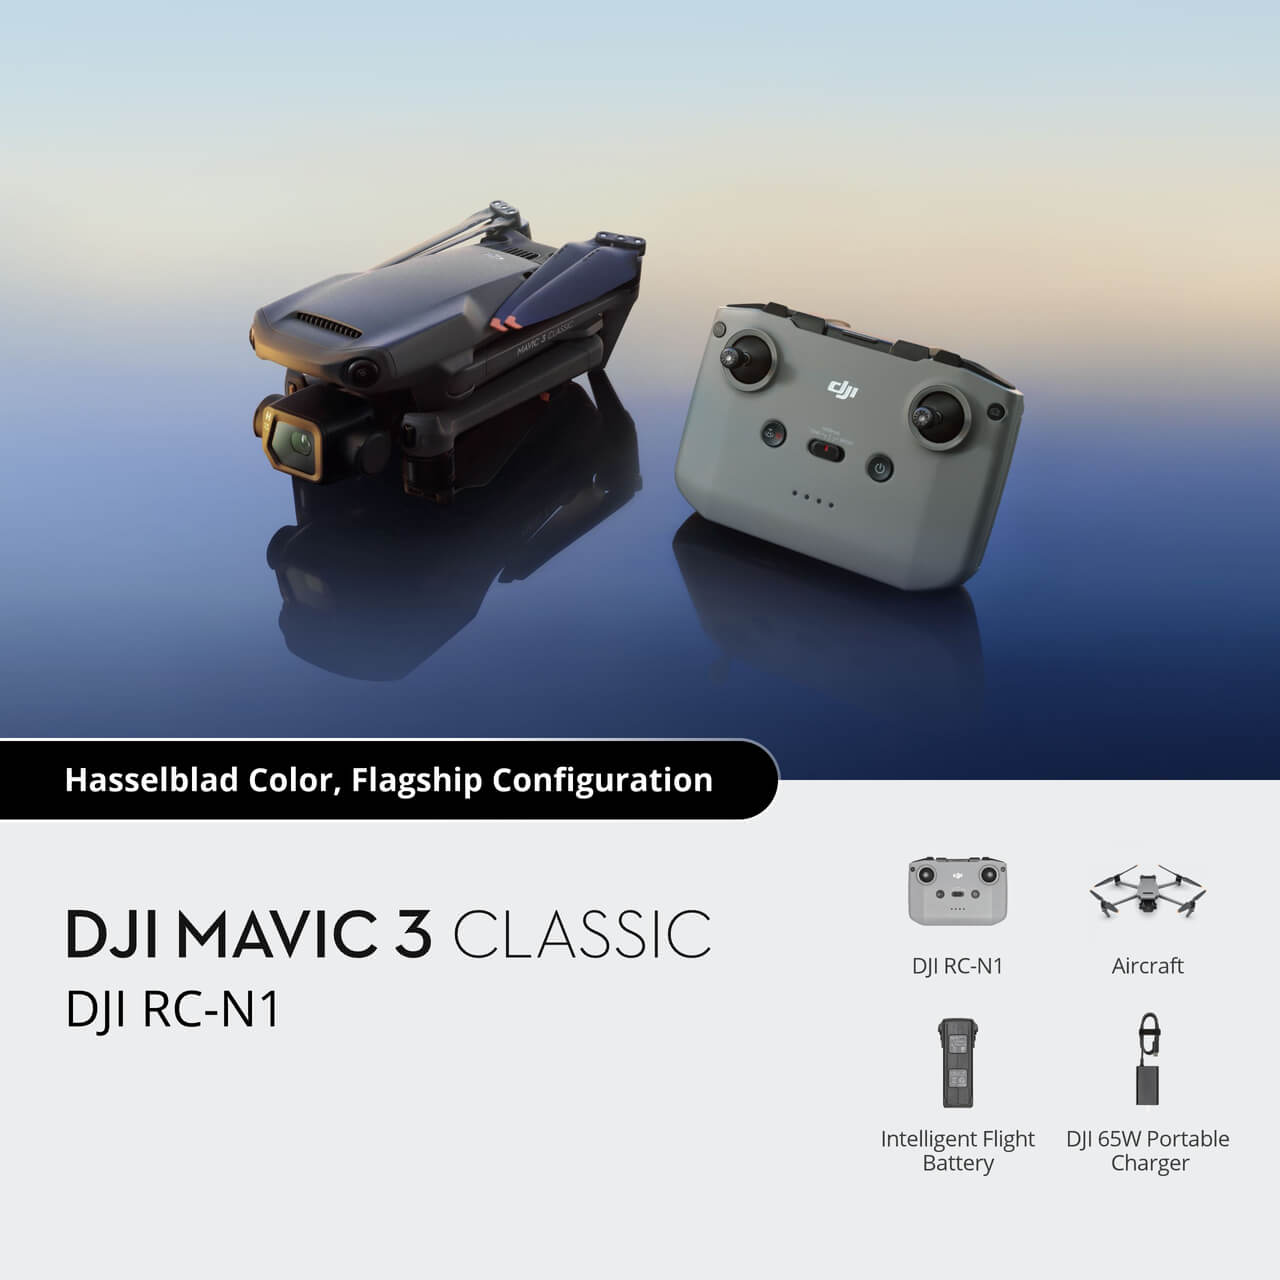 DJI Mavic 3 Classic (DJI RC-N1)